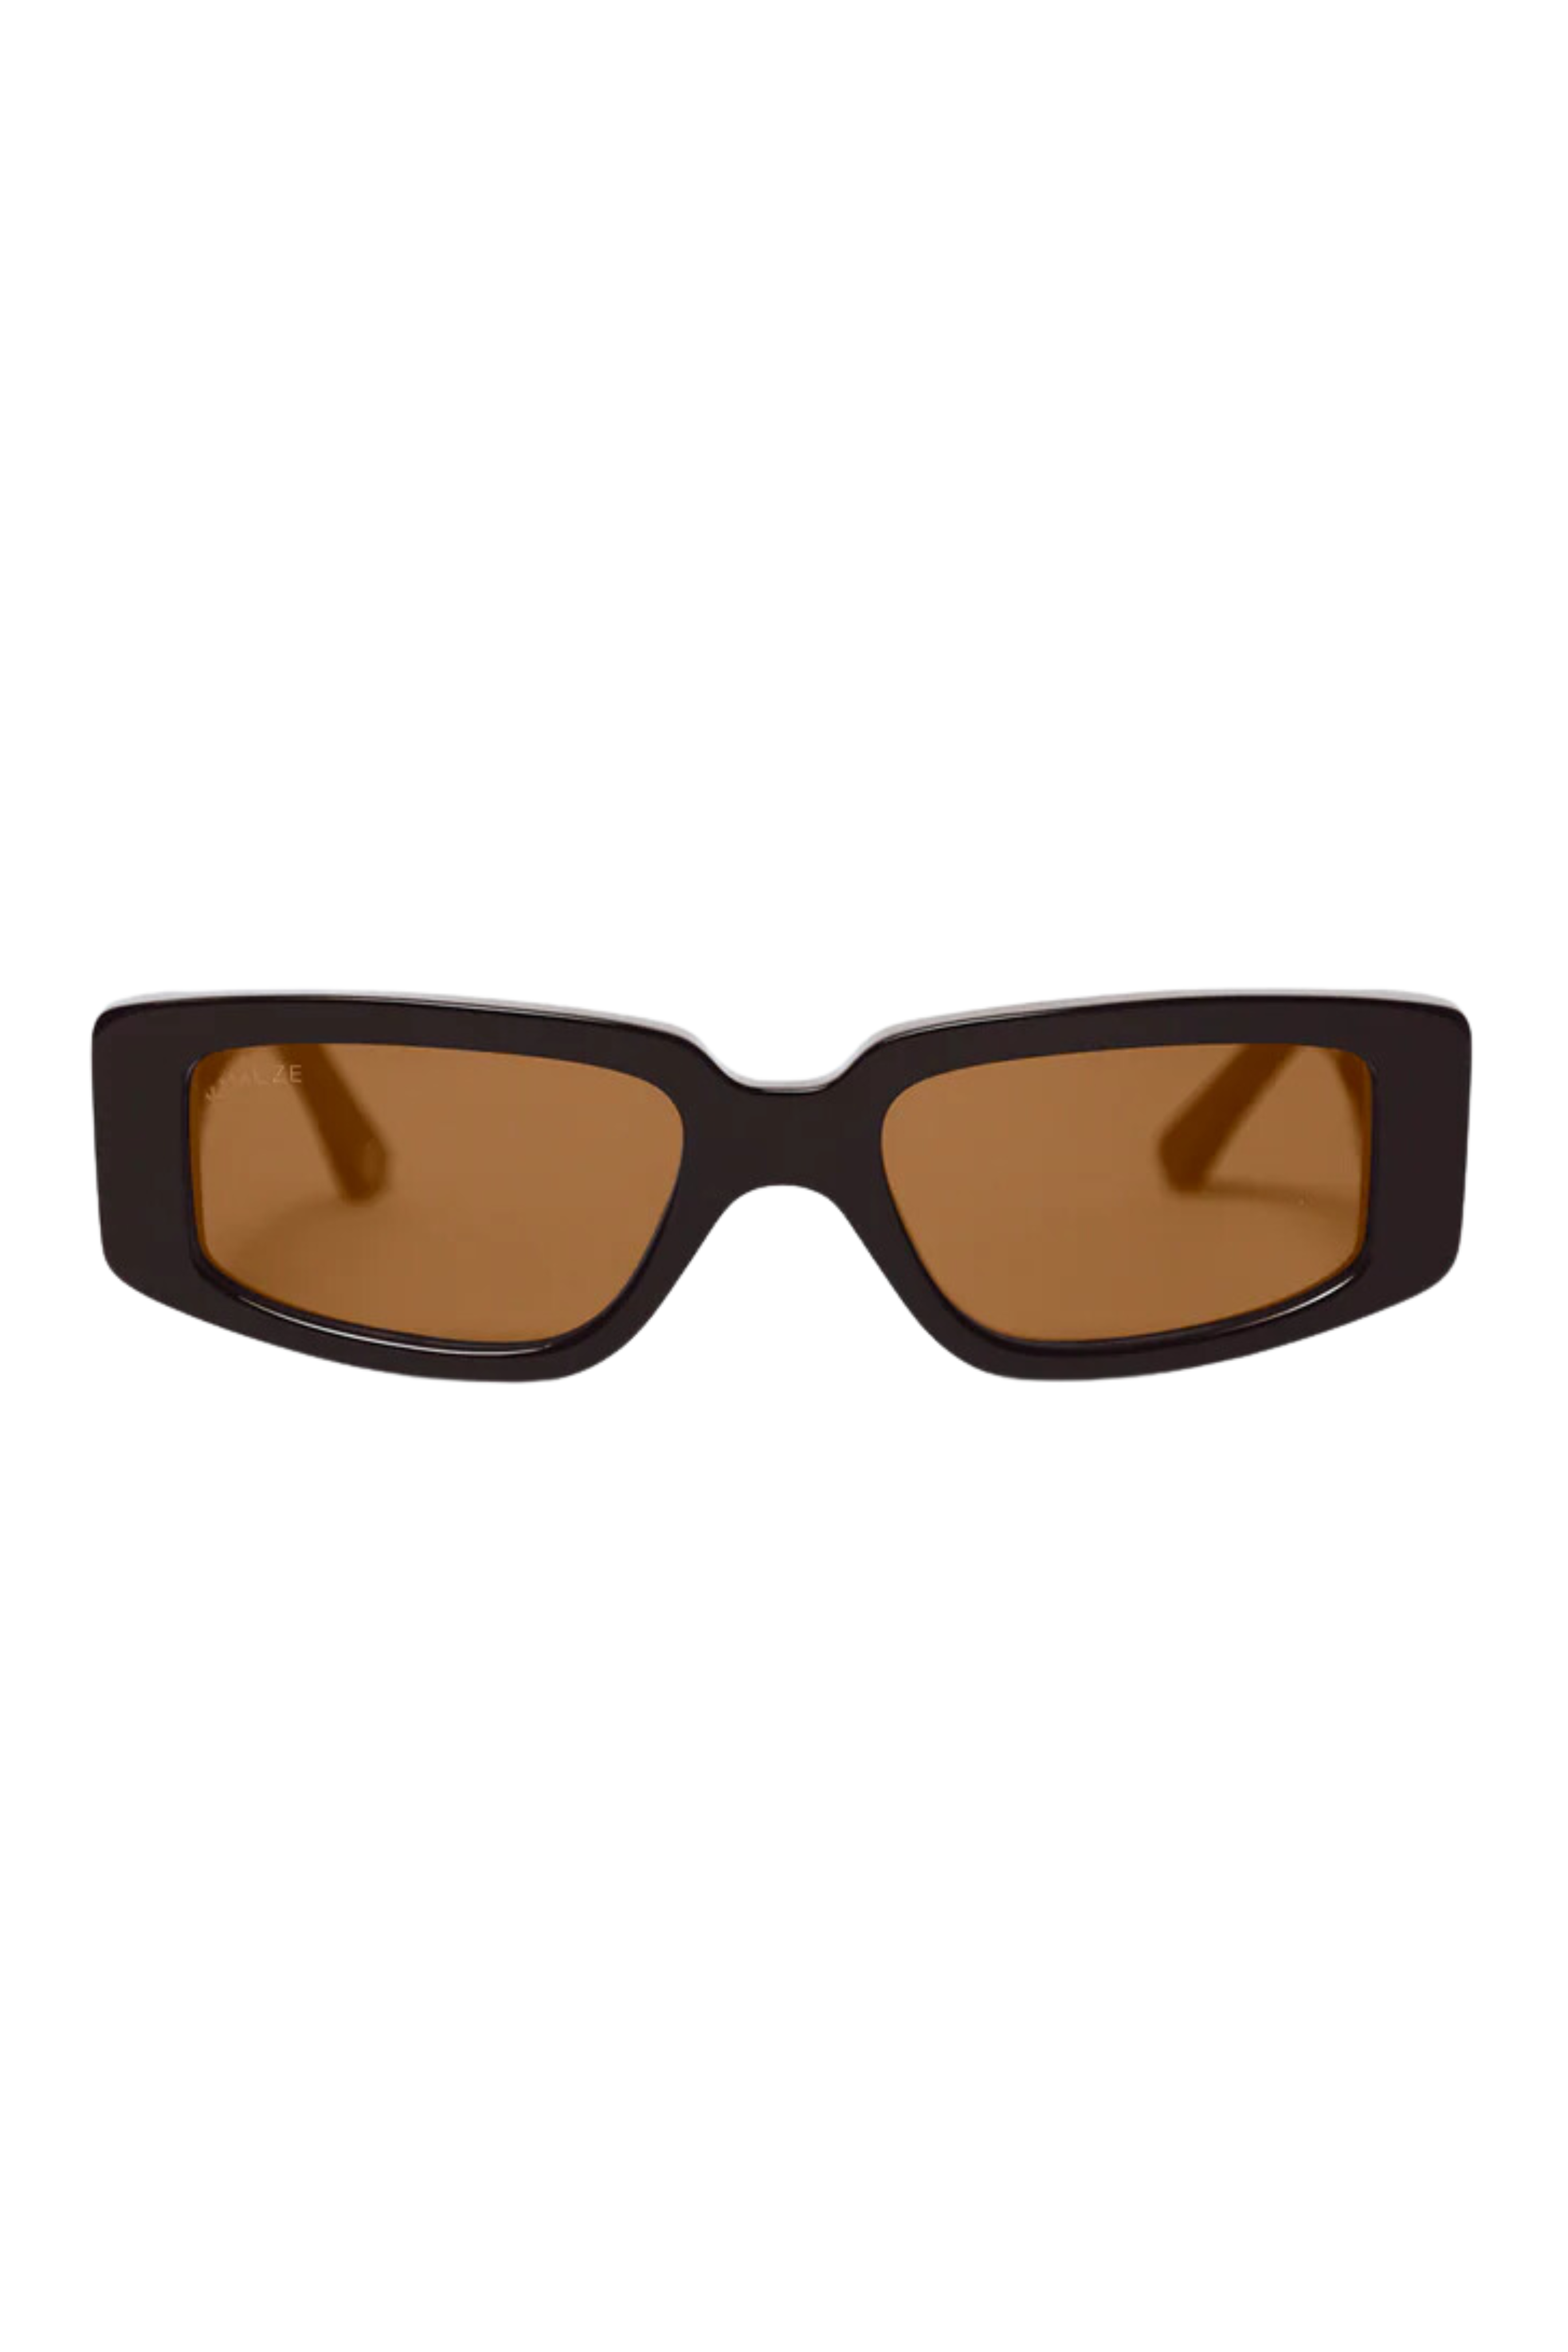 KIMEZE Concept 2 Brown Sunglasses